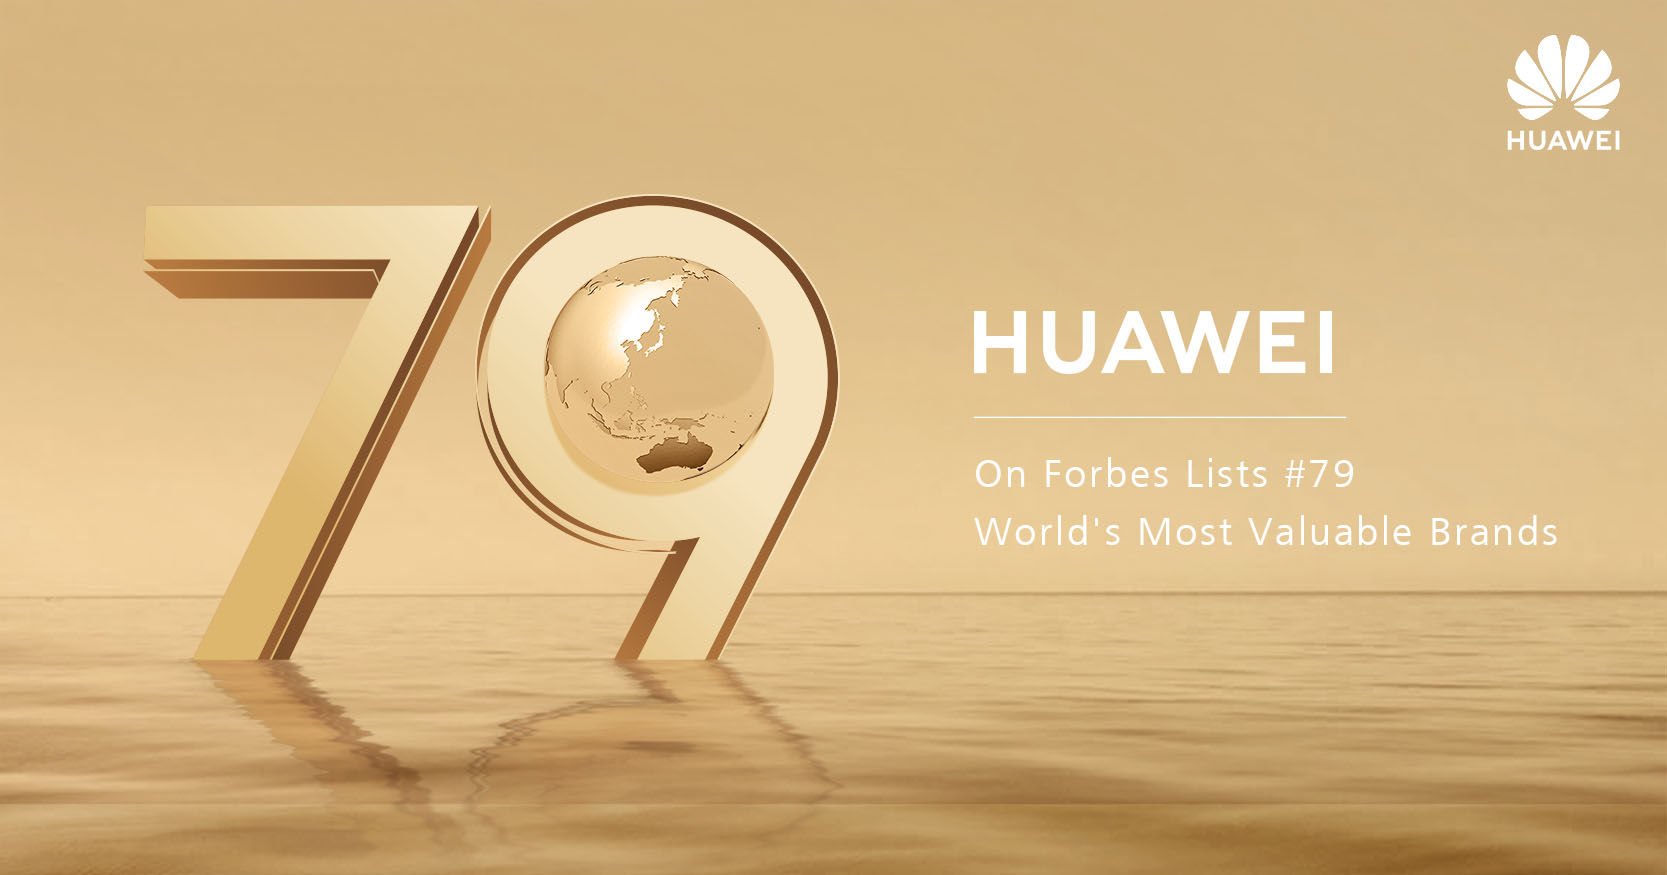 1.1 milliárddal nőtt a Huawei értéke